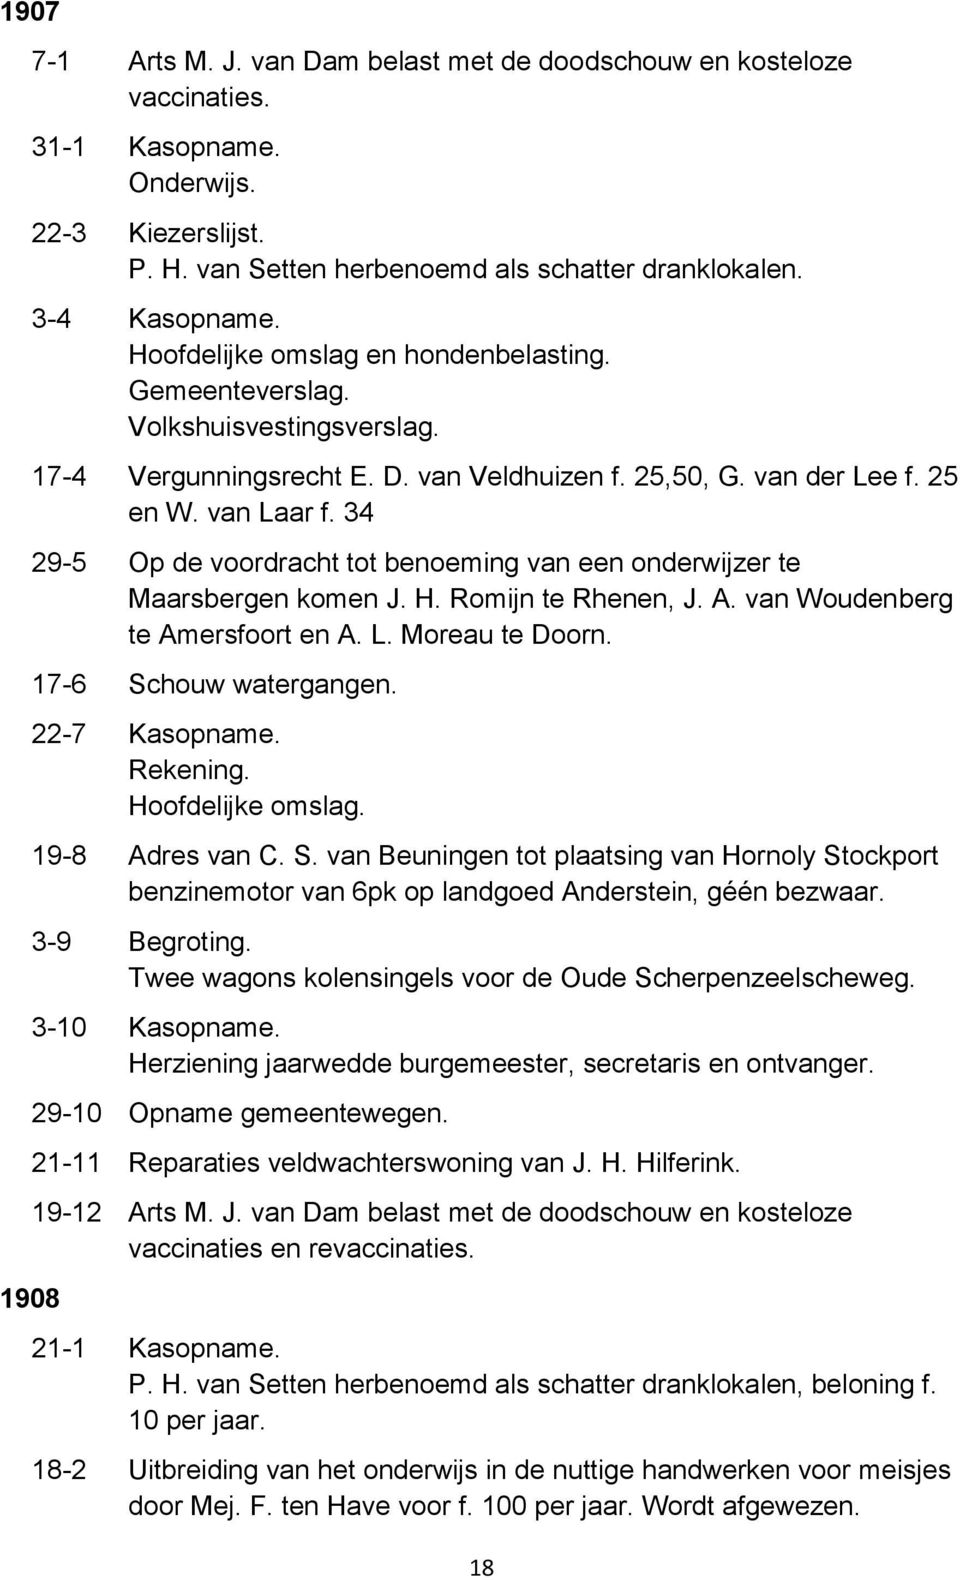 34 29-5 Op de voordracht tot benoeming van een onderwijzer te Maarsbergen komen J. H. Romijn te Rhenen, J. A. van Woudenberg te Amersfoort en A. L. Moreau te Doorn. 17-6 Schouw watergangen.